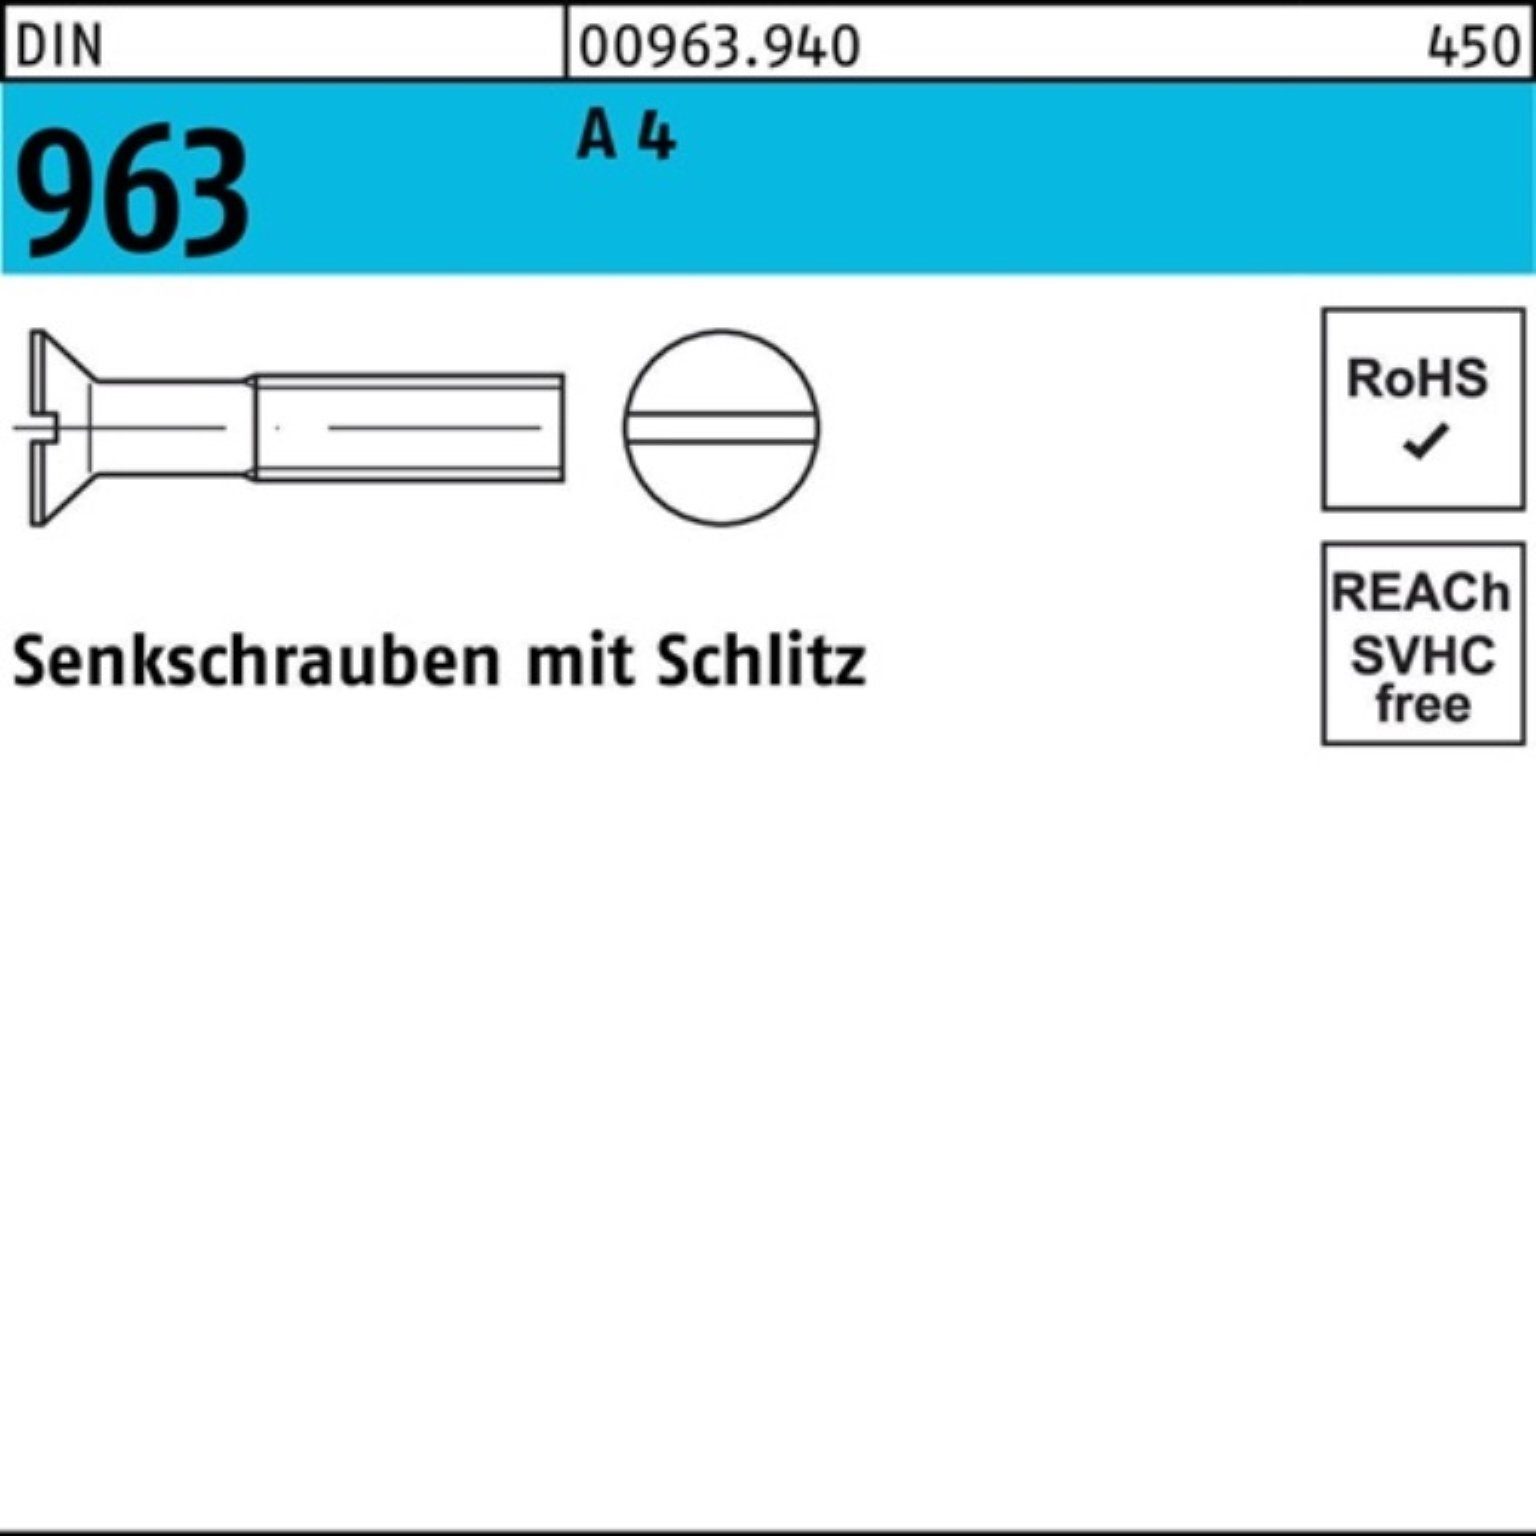 Stück 100 Reyher 963 963 DIN Senkschraube Senkschraube 100er Schlitz M10x DIN 25 A 4 Pack